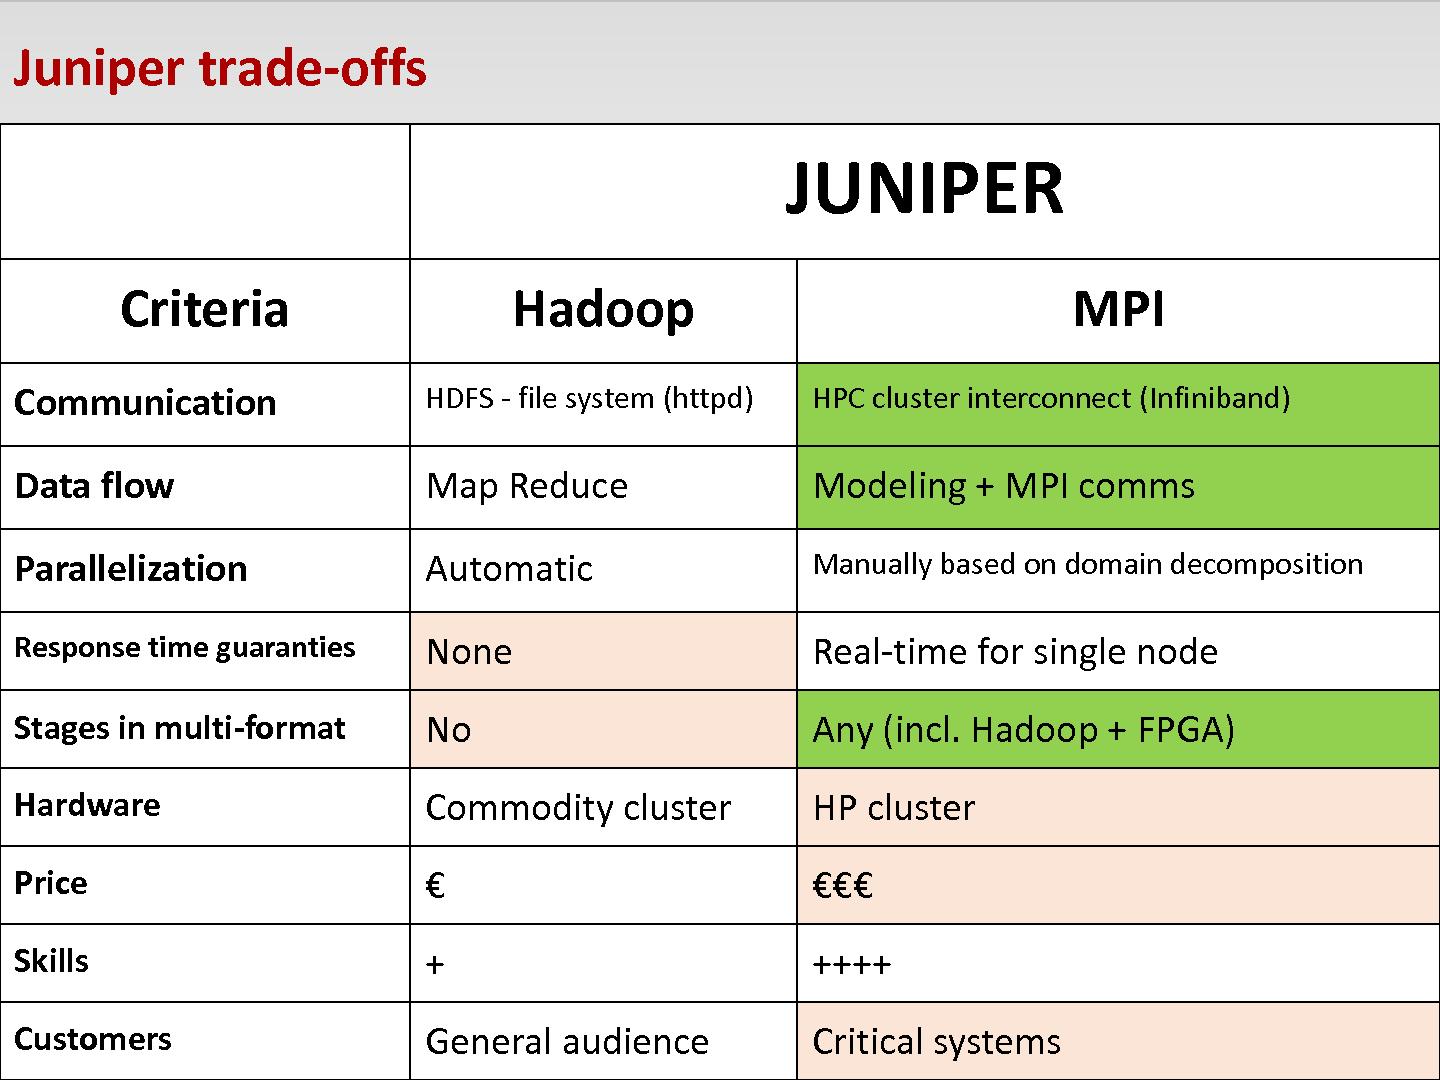 Файл:JUNIPER — Создание эффективной платформы для анализа больших объёмов гетерогенных данных (Андрей Садовых, SECR-2014).pdf